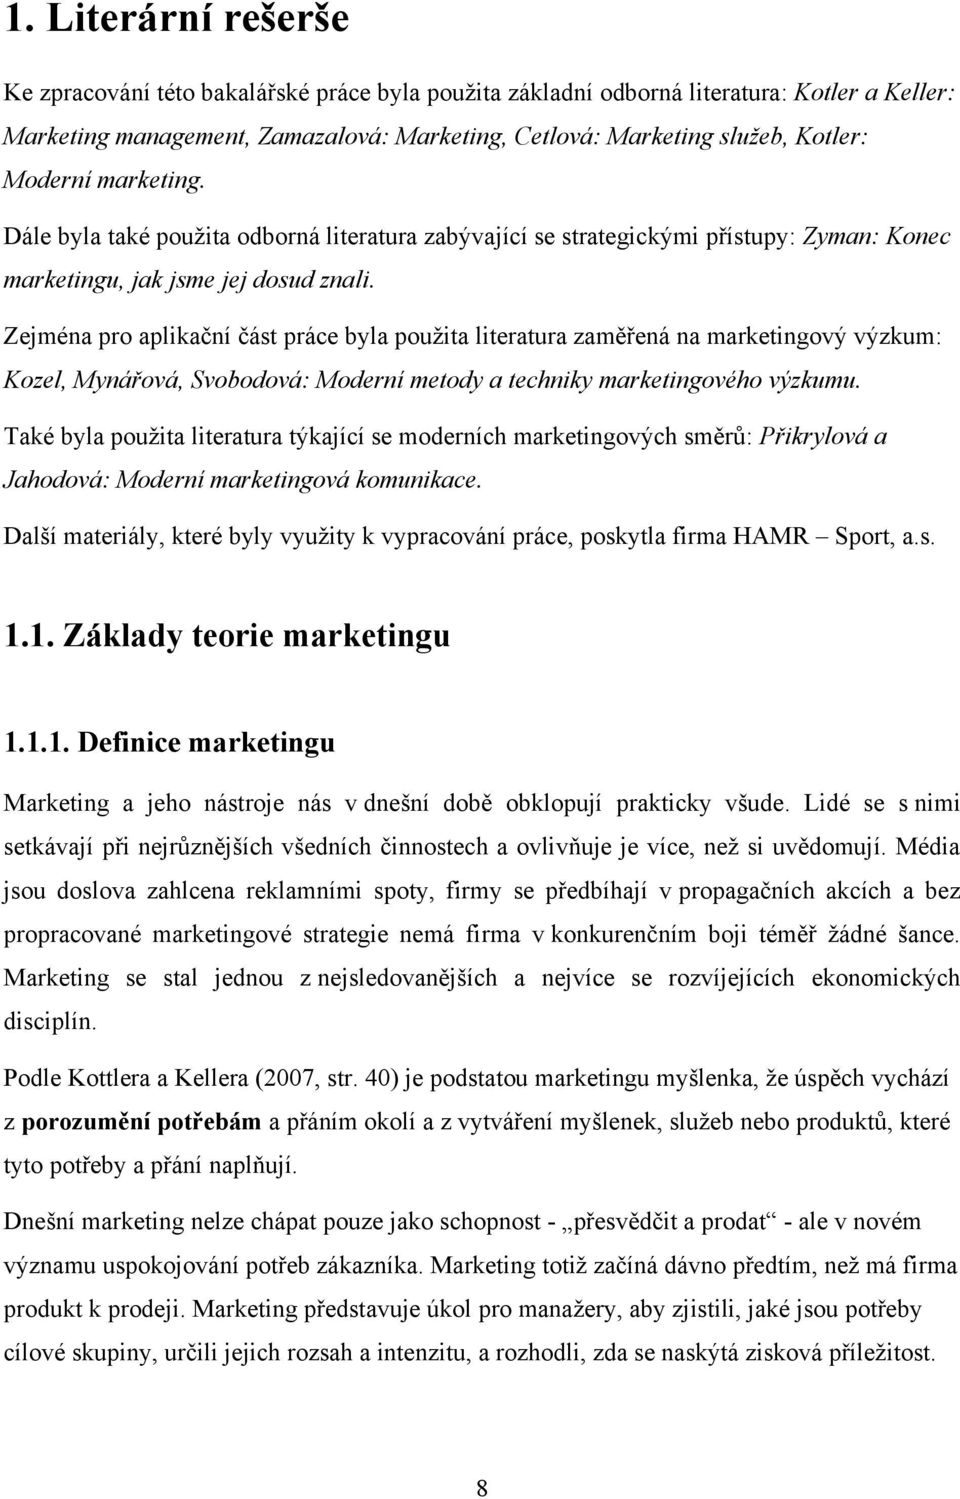 Zejména pro aplikační část práce byla pouţita literatura zaměřená na marketingový výzkum: Kozel, Mynářová, Svobodová: Moderní metody a techniky marketingového výzkumu.